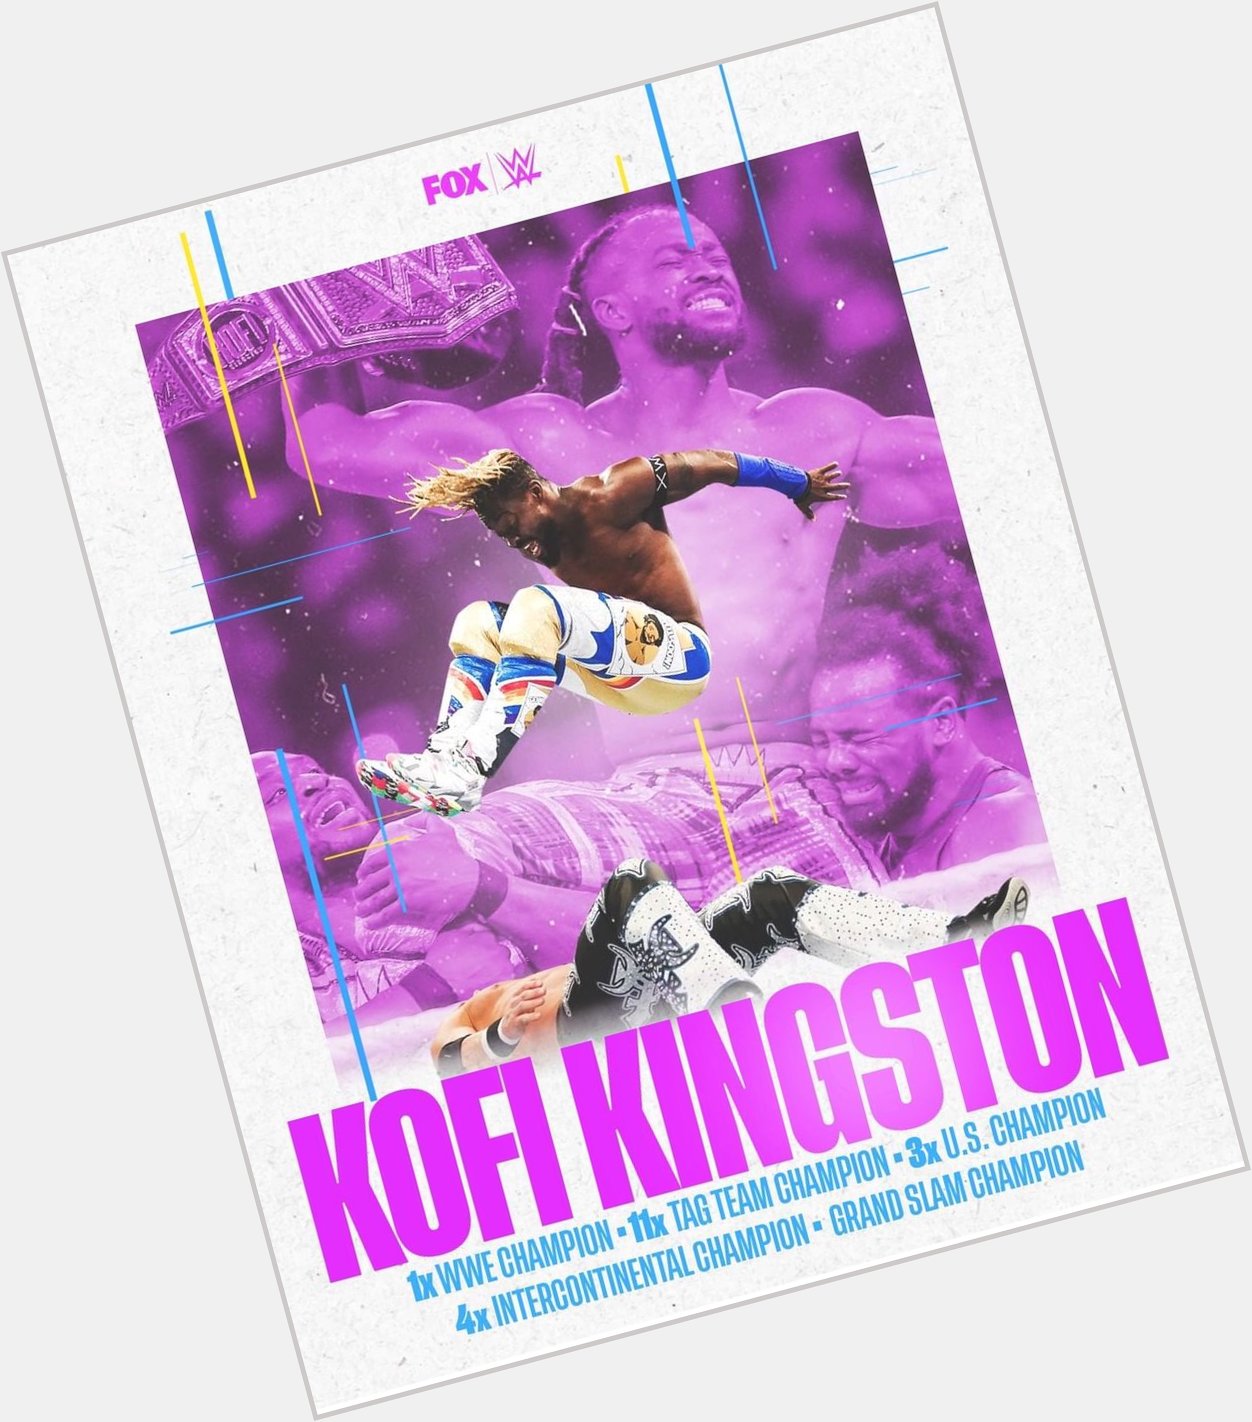  happy birthday Kofi Kingston! Have a phenomenal Friday and birthday man!                  